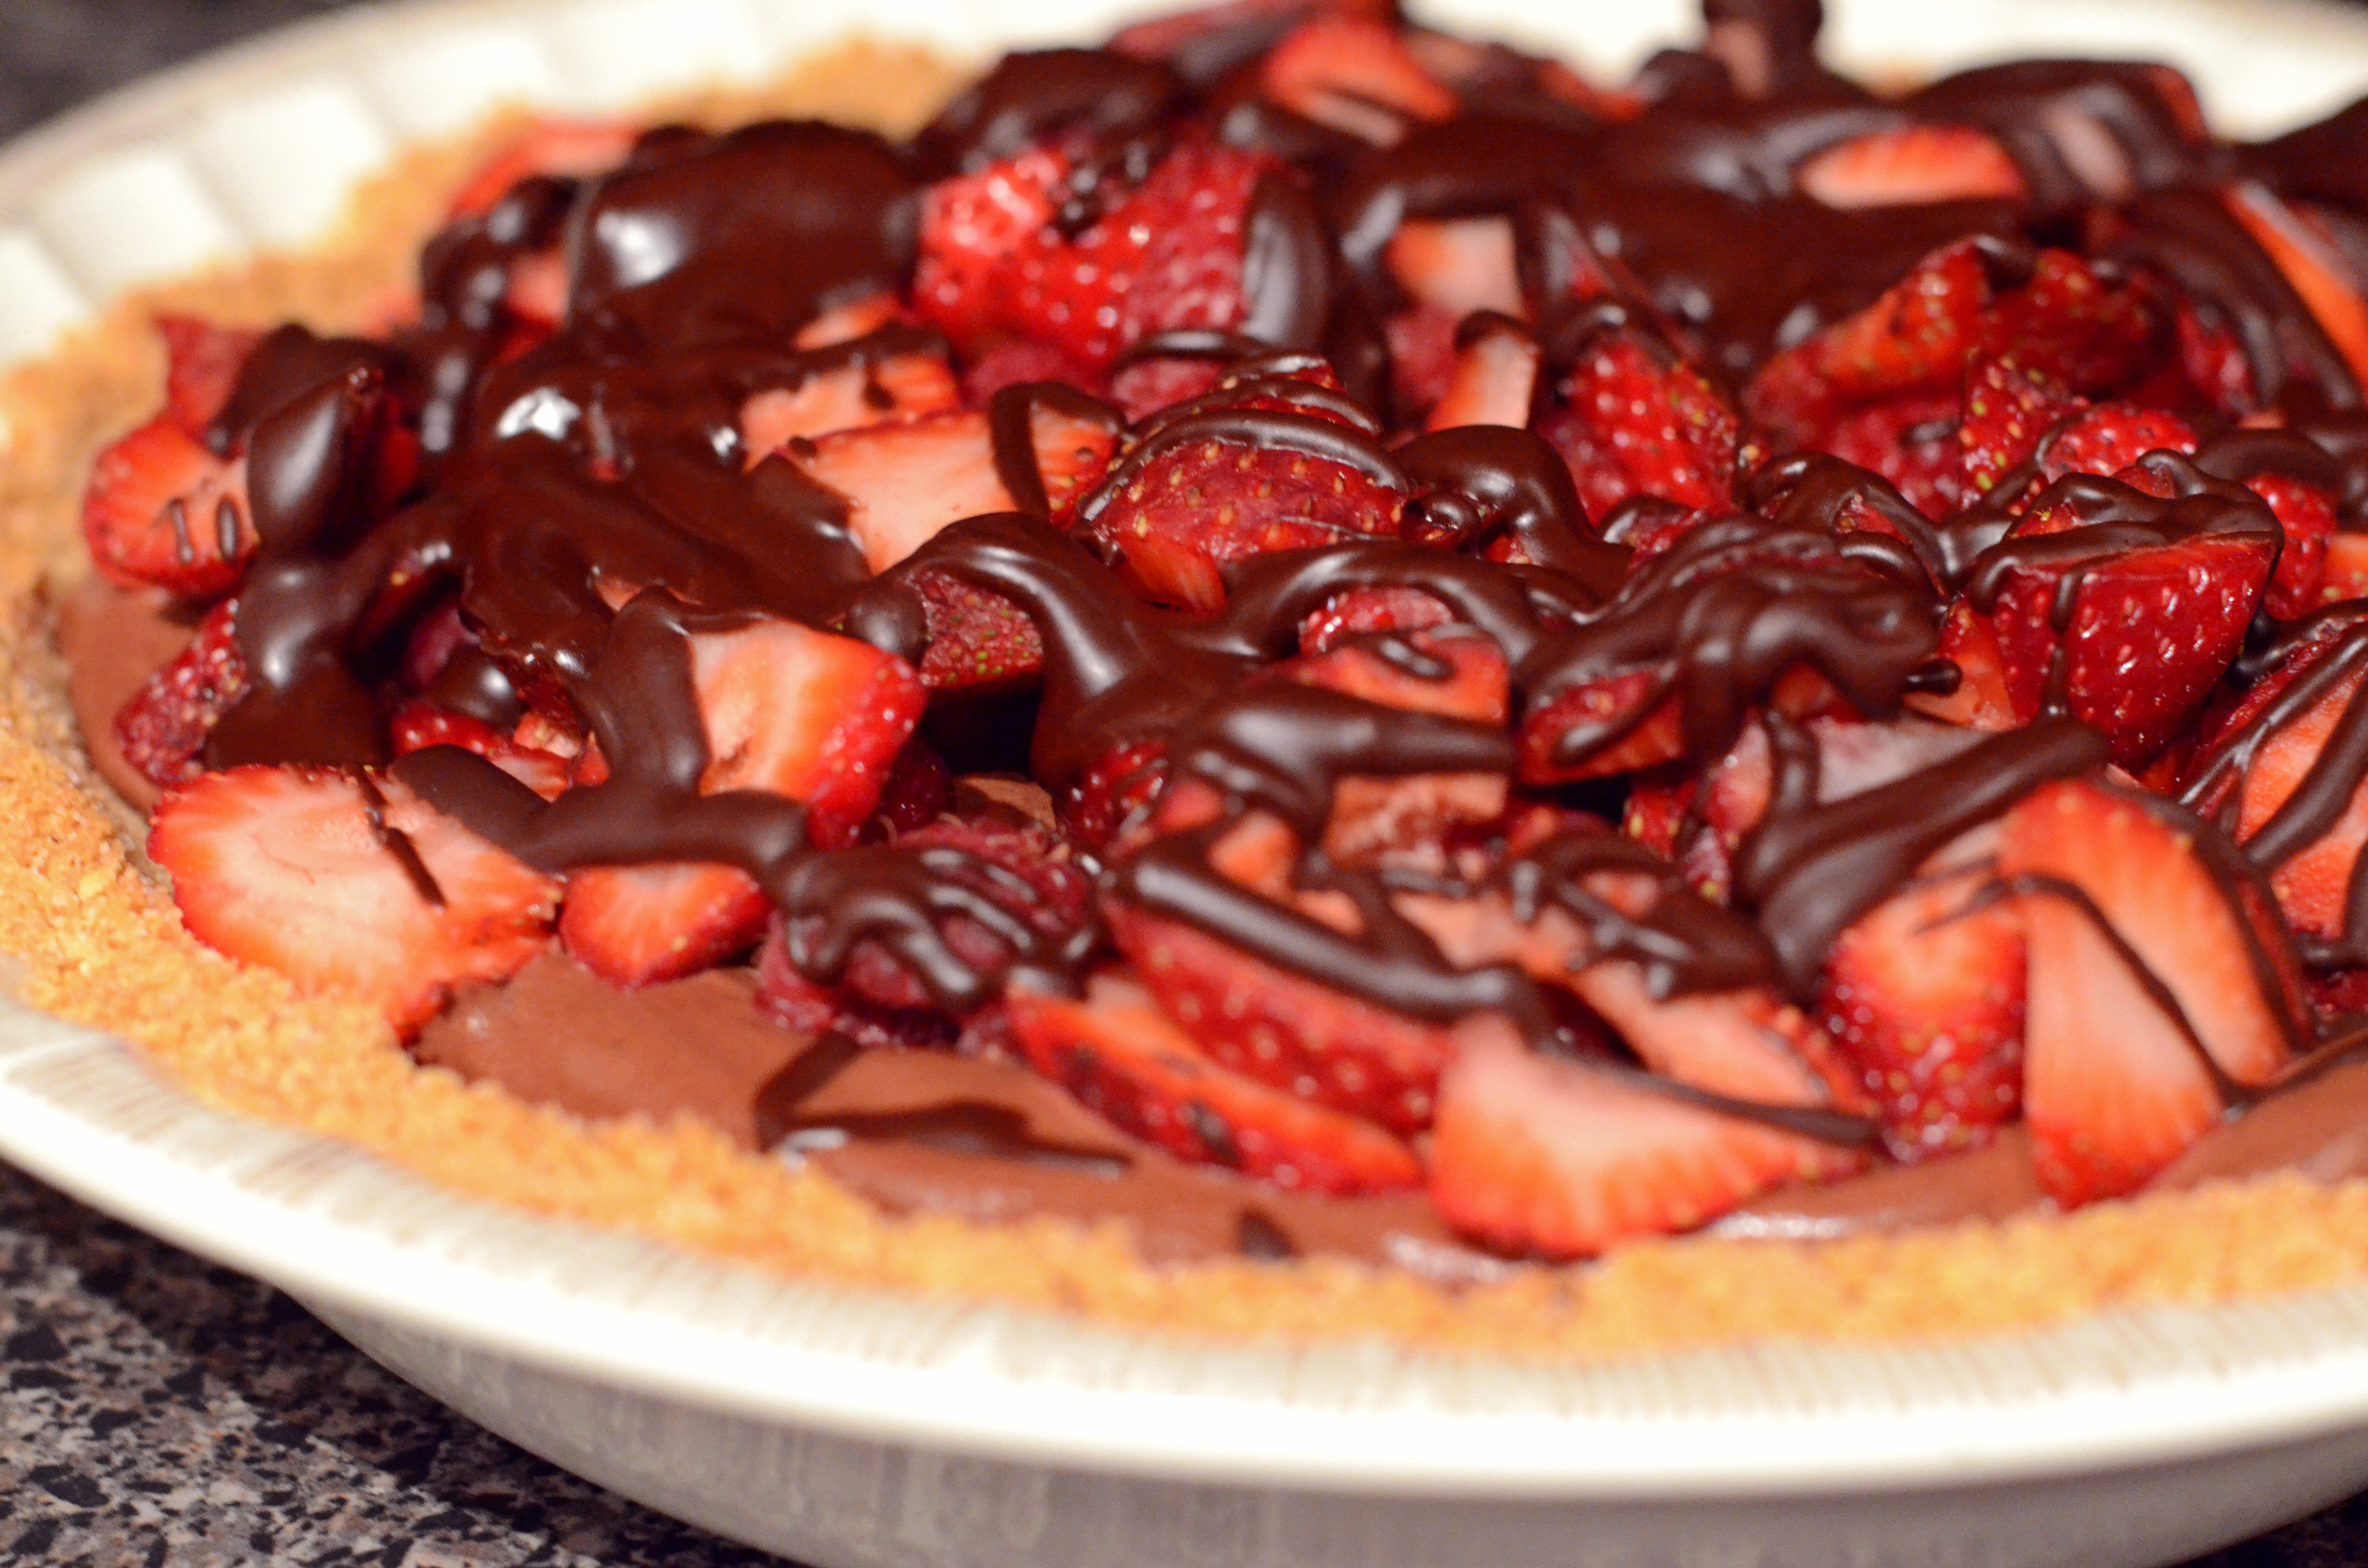 I got a Chocolate Pie craving…